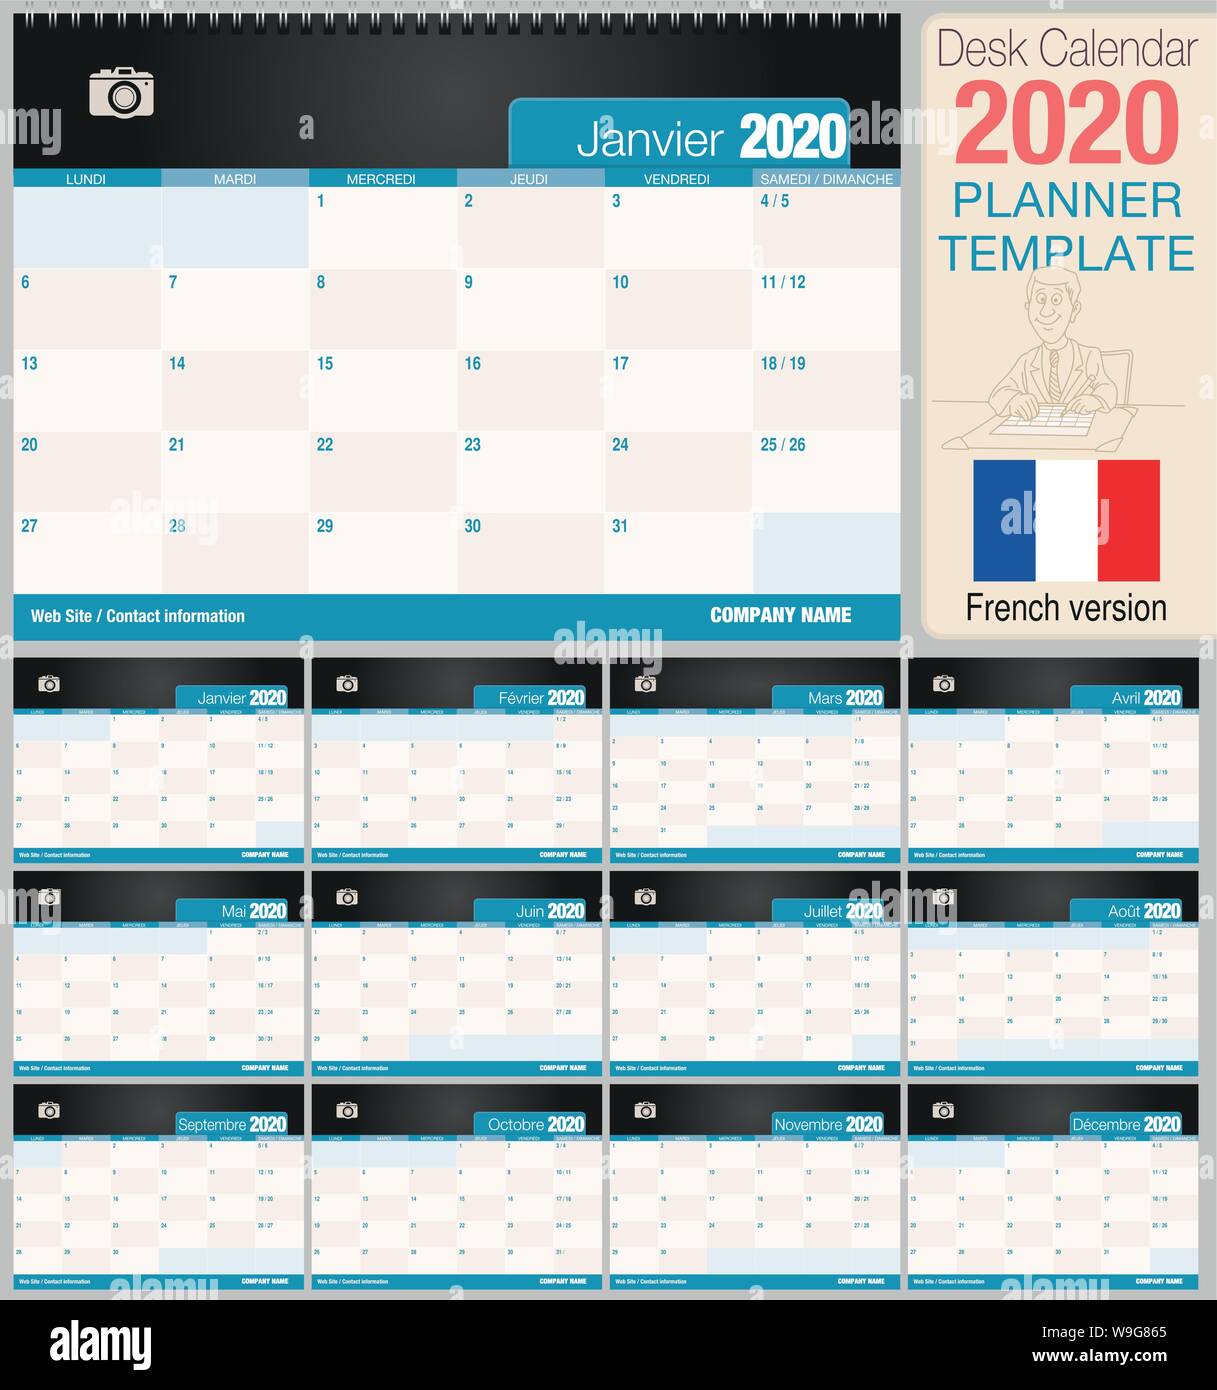 Utile scrivania calendario 2020 con lo spazio per posizionare una foto. Dimensioni: 210 mm x 148 mm. Versione francese - immagine vettoriale Illustrazione Vettoriale